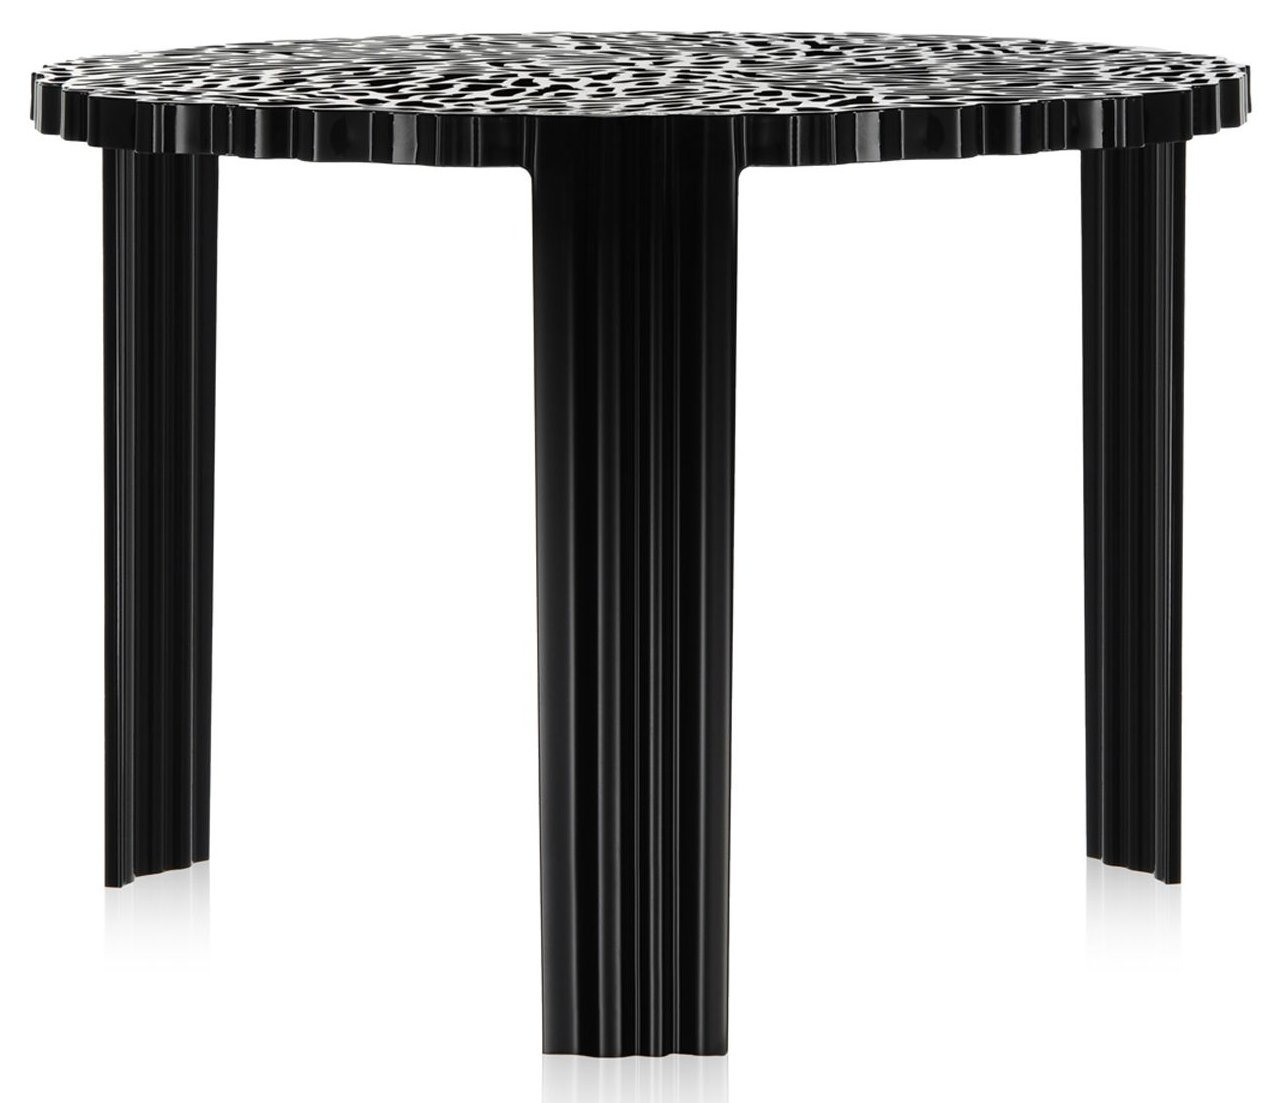 Masuta Kartell T-Table design Patricia Urquiola 50cm h 36cm negru 36cm